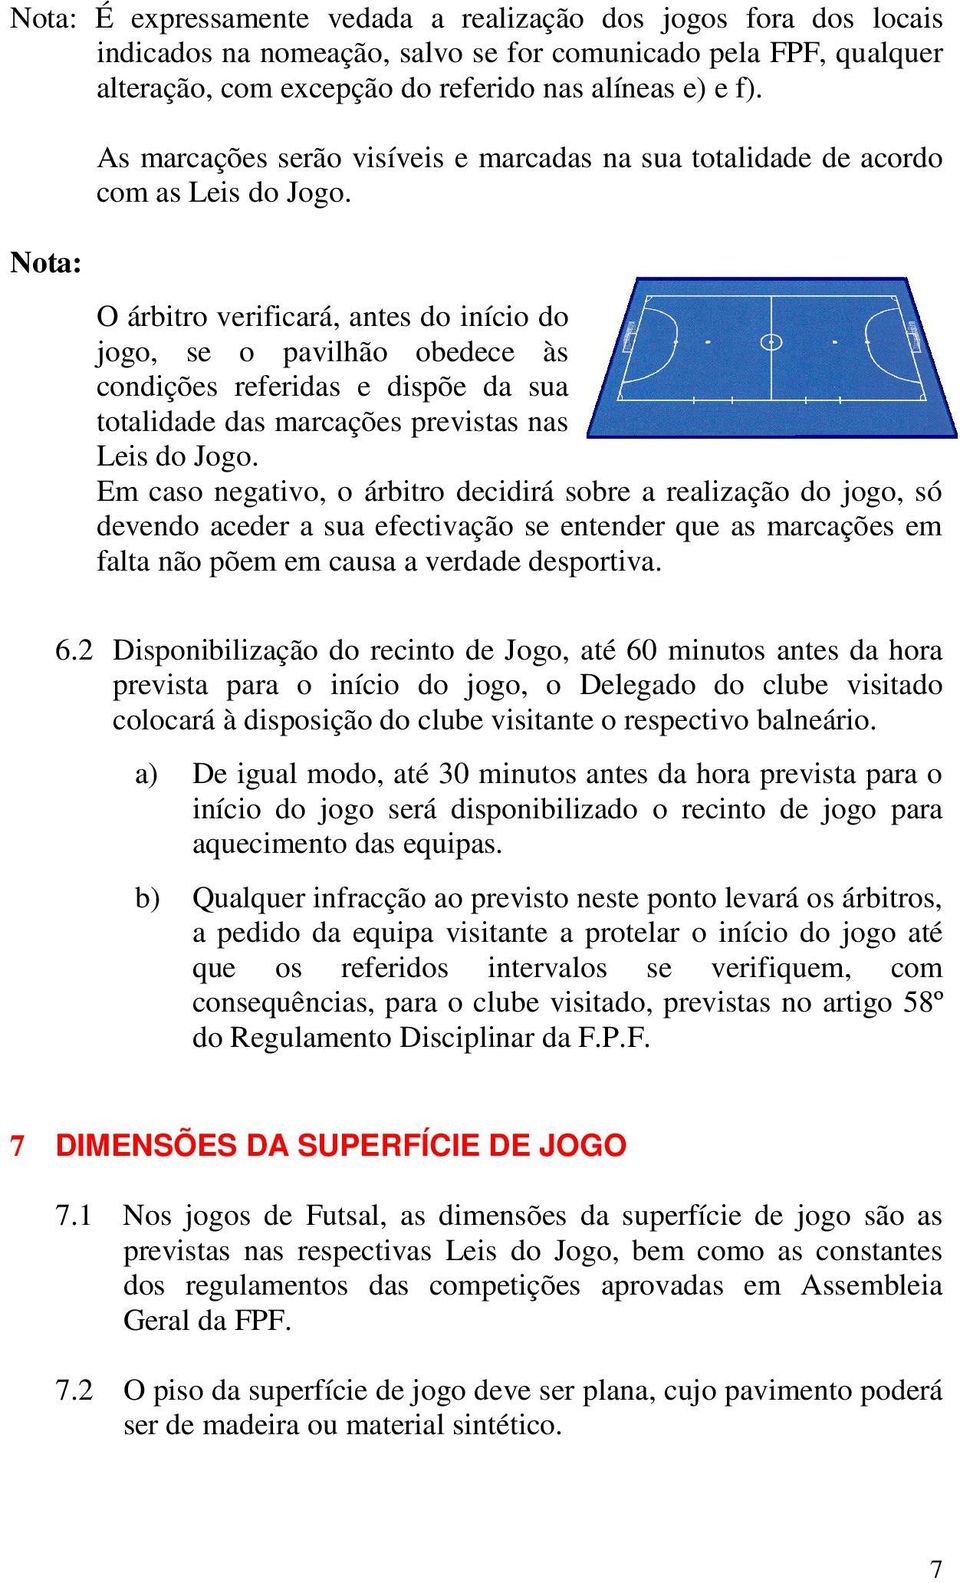 O árbitro verificará, antes do início do jogo, se o pavilhão obedece às condições referidas e dispõe da sua totalidade das marcações previstas nas Leis do Jogo.